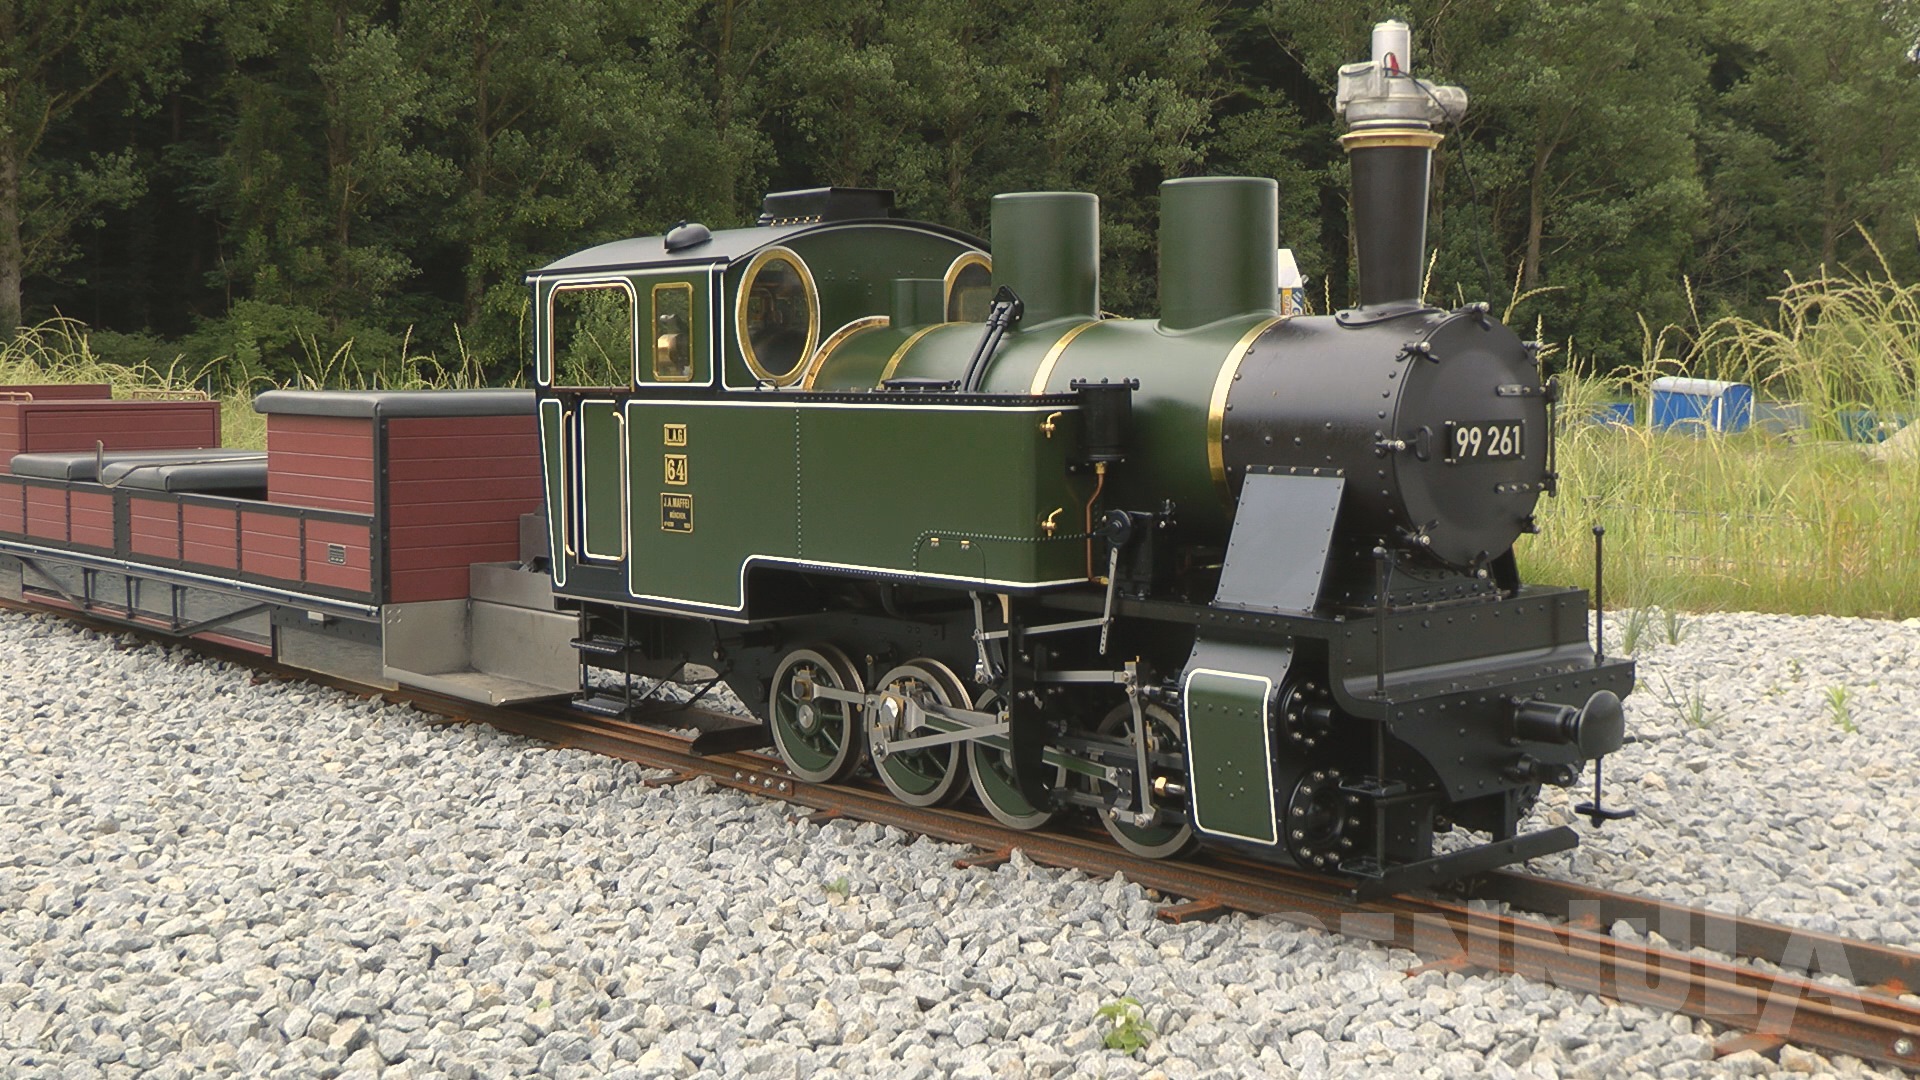 Dampflokomotive LAG 64 auf der Parkeisenbahn bzw. Gartenbahn im Hans-Peter Porsche Traumwerk